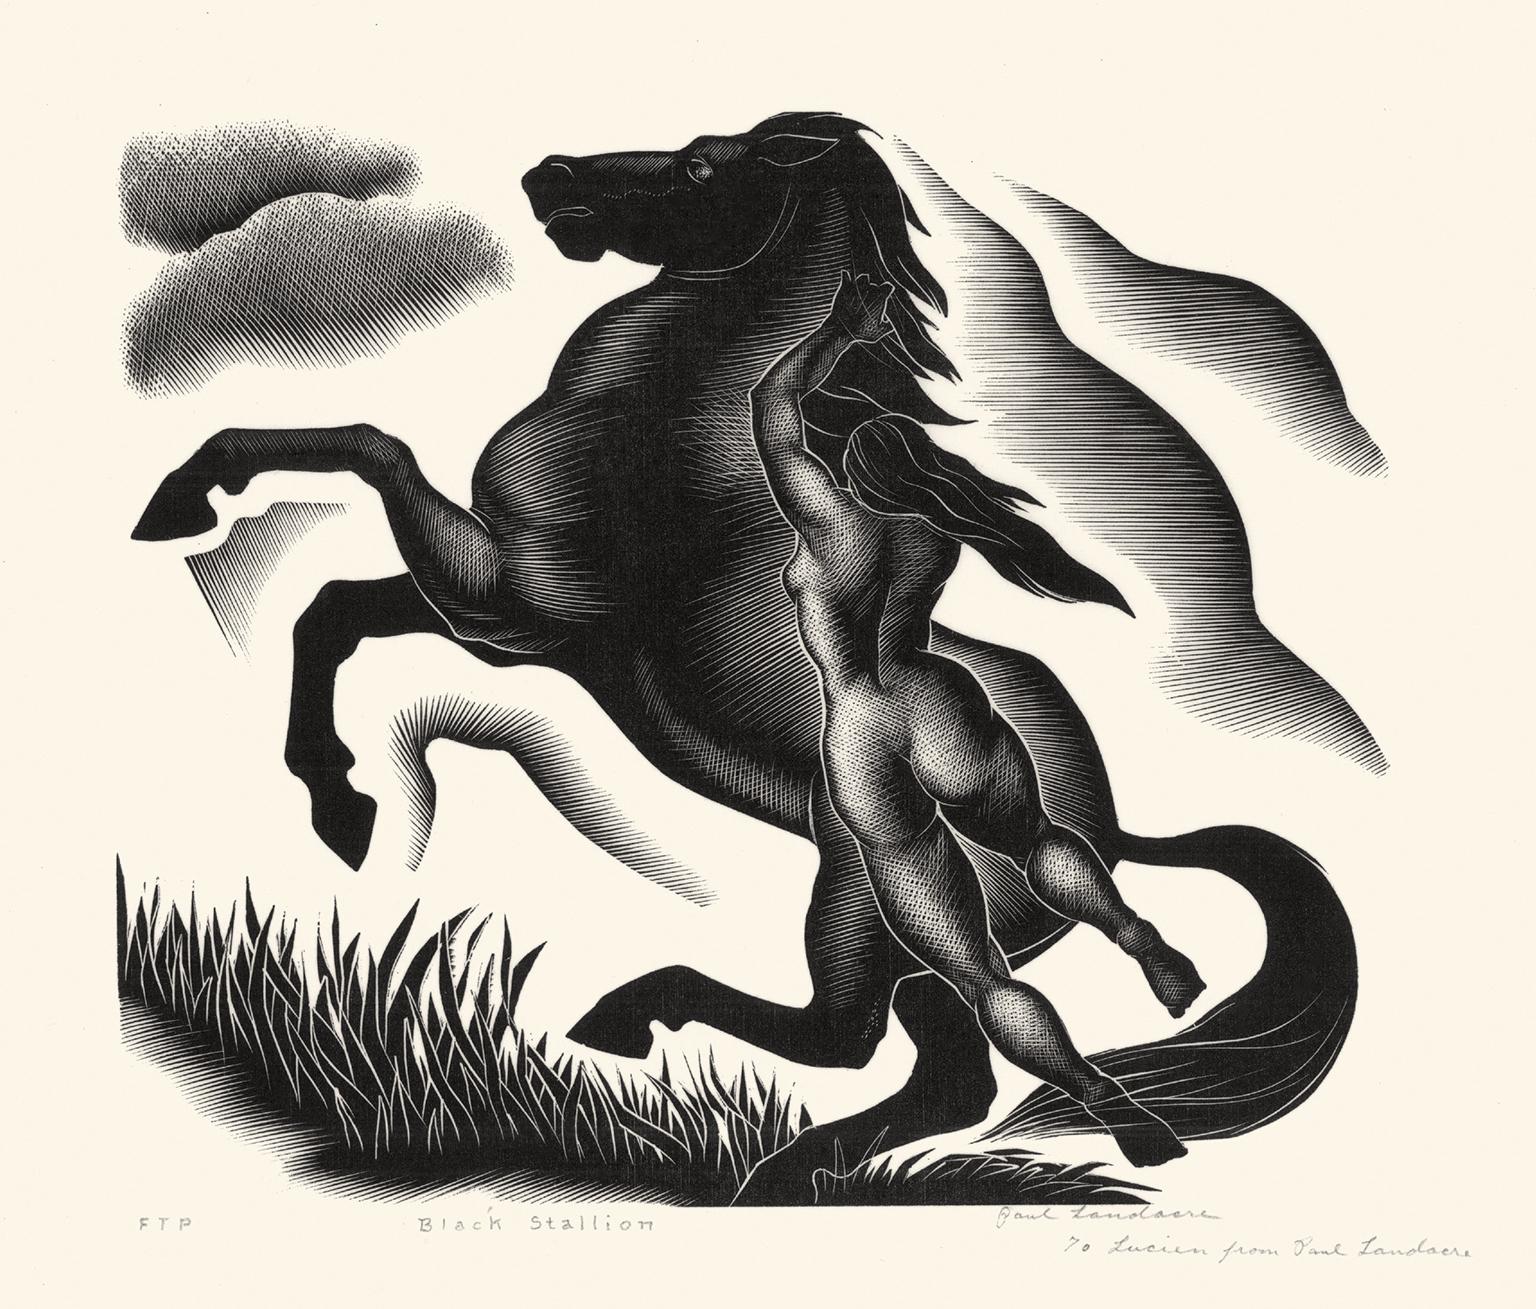 Paul Landacre Nude Print - Black Stallion — unique first trial proof